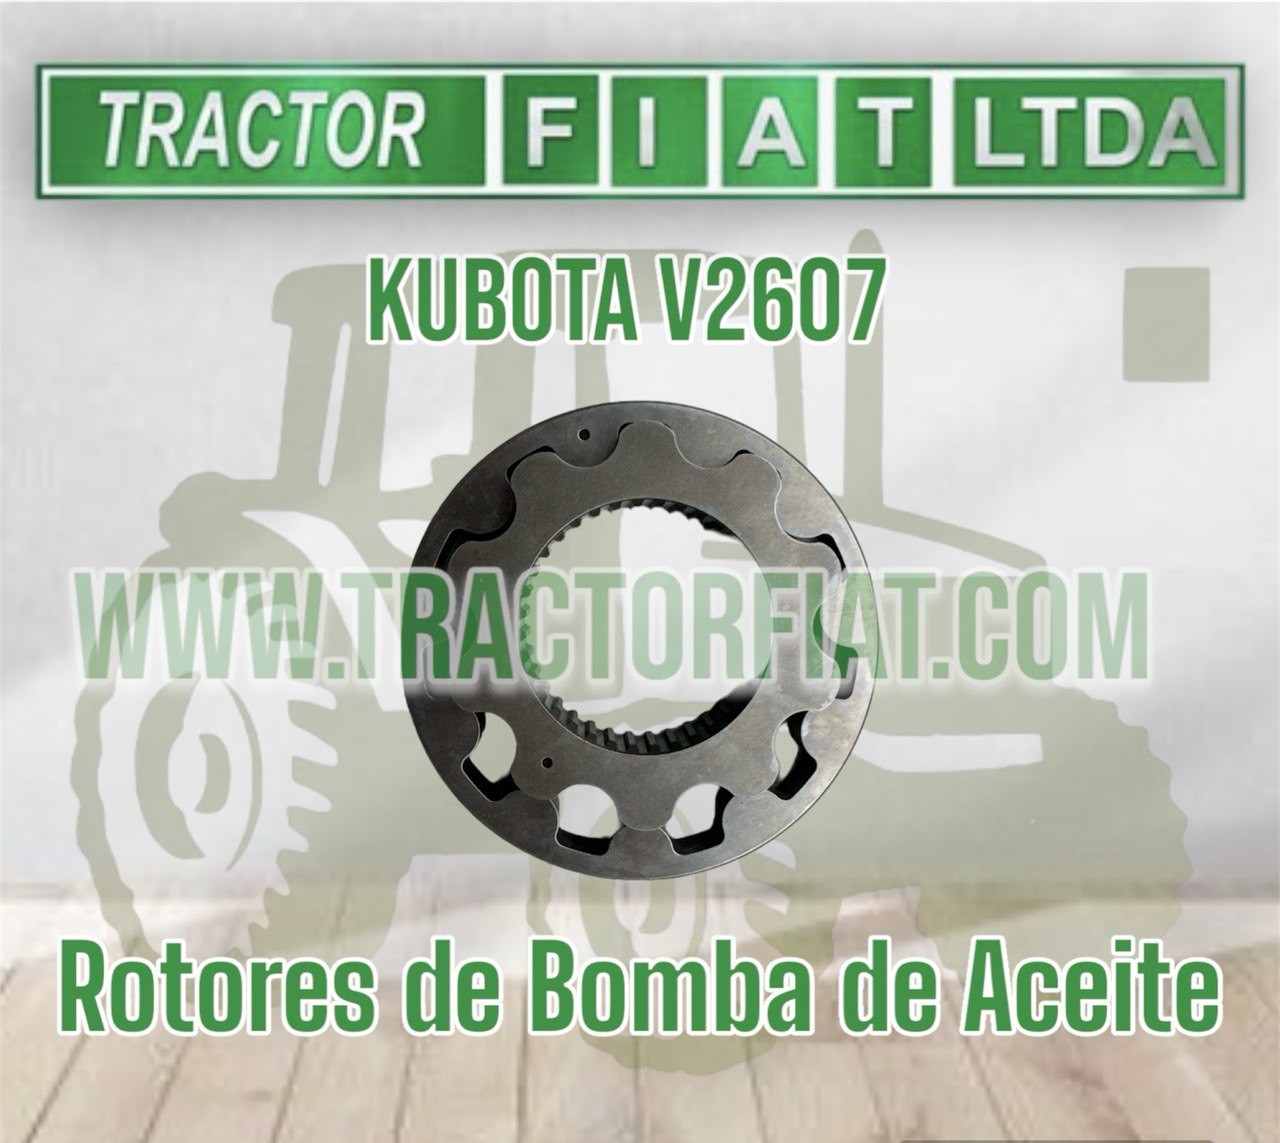 ROTORES BOMBA DE ACEITE - MOTOR KUBOTA V2607